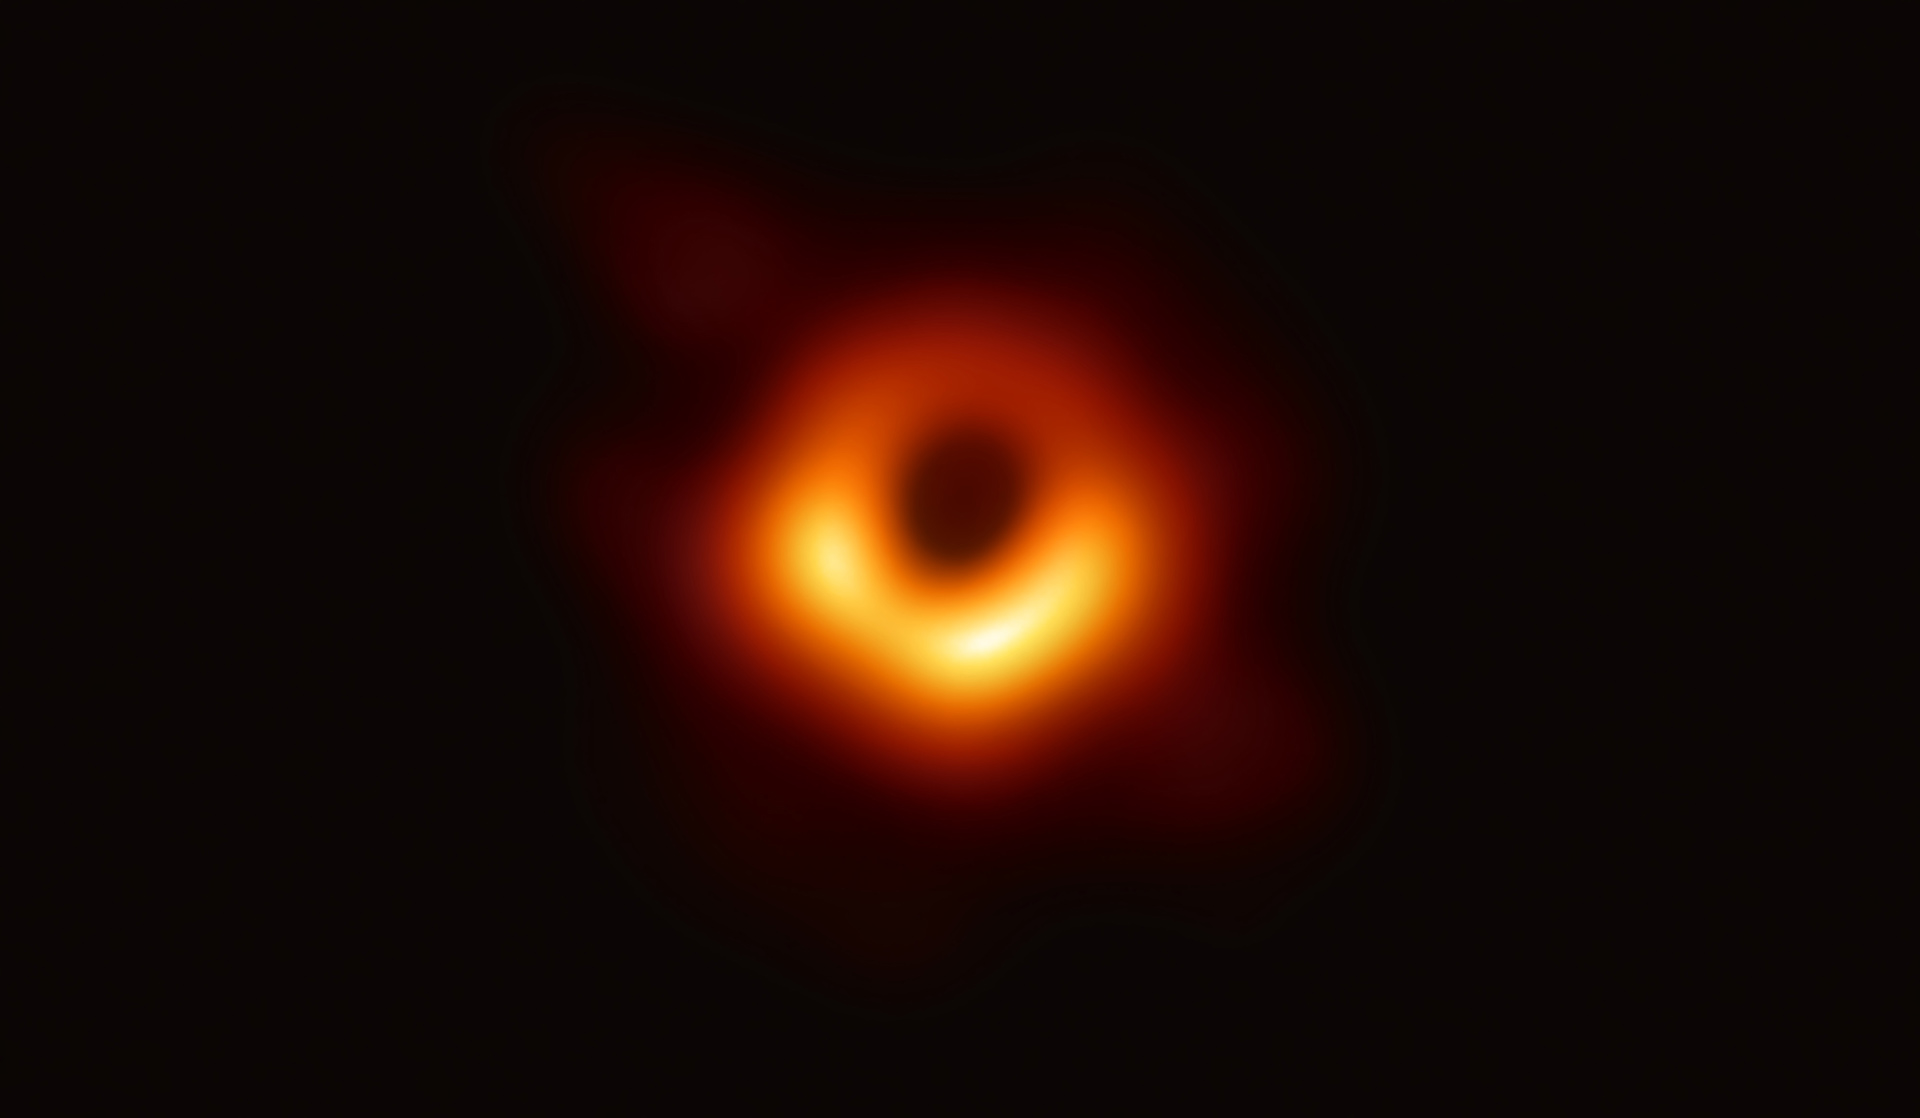 Фото сверхмассивной черной дыры — коллапсара в галактике Messier 87 (М87). Event Horizon Telescope (EHT).